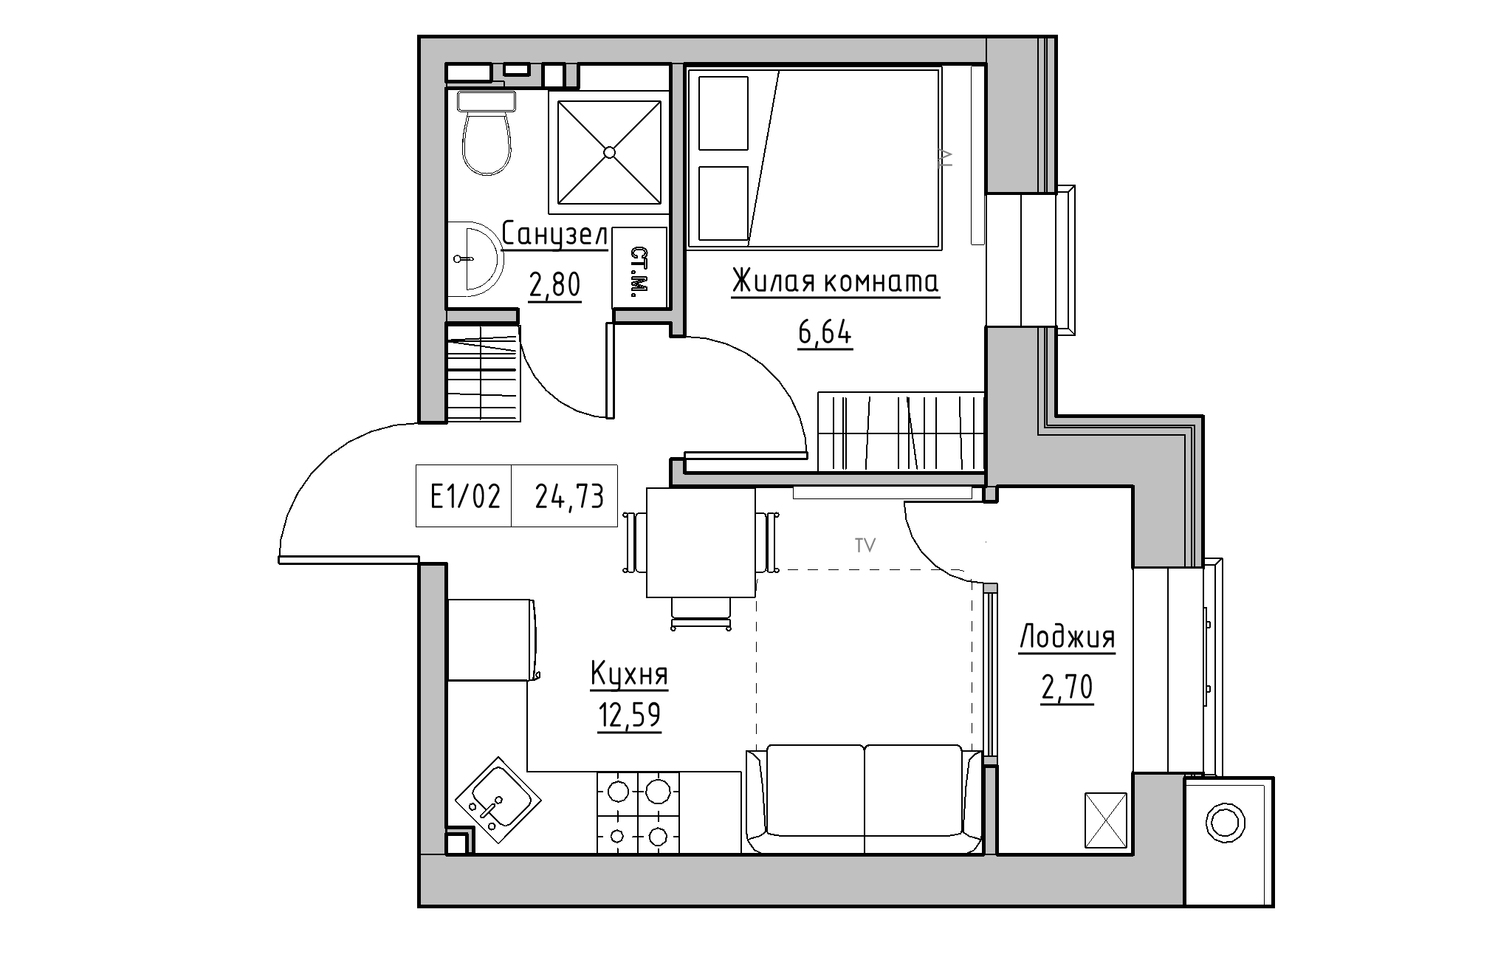 Планировка 1-к квартира площей 24.73м2, KS-013-02/0001.